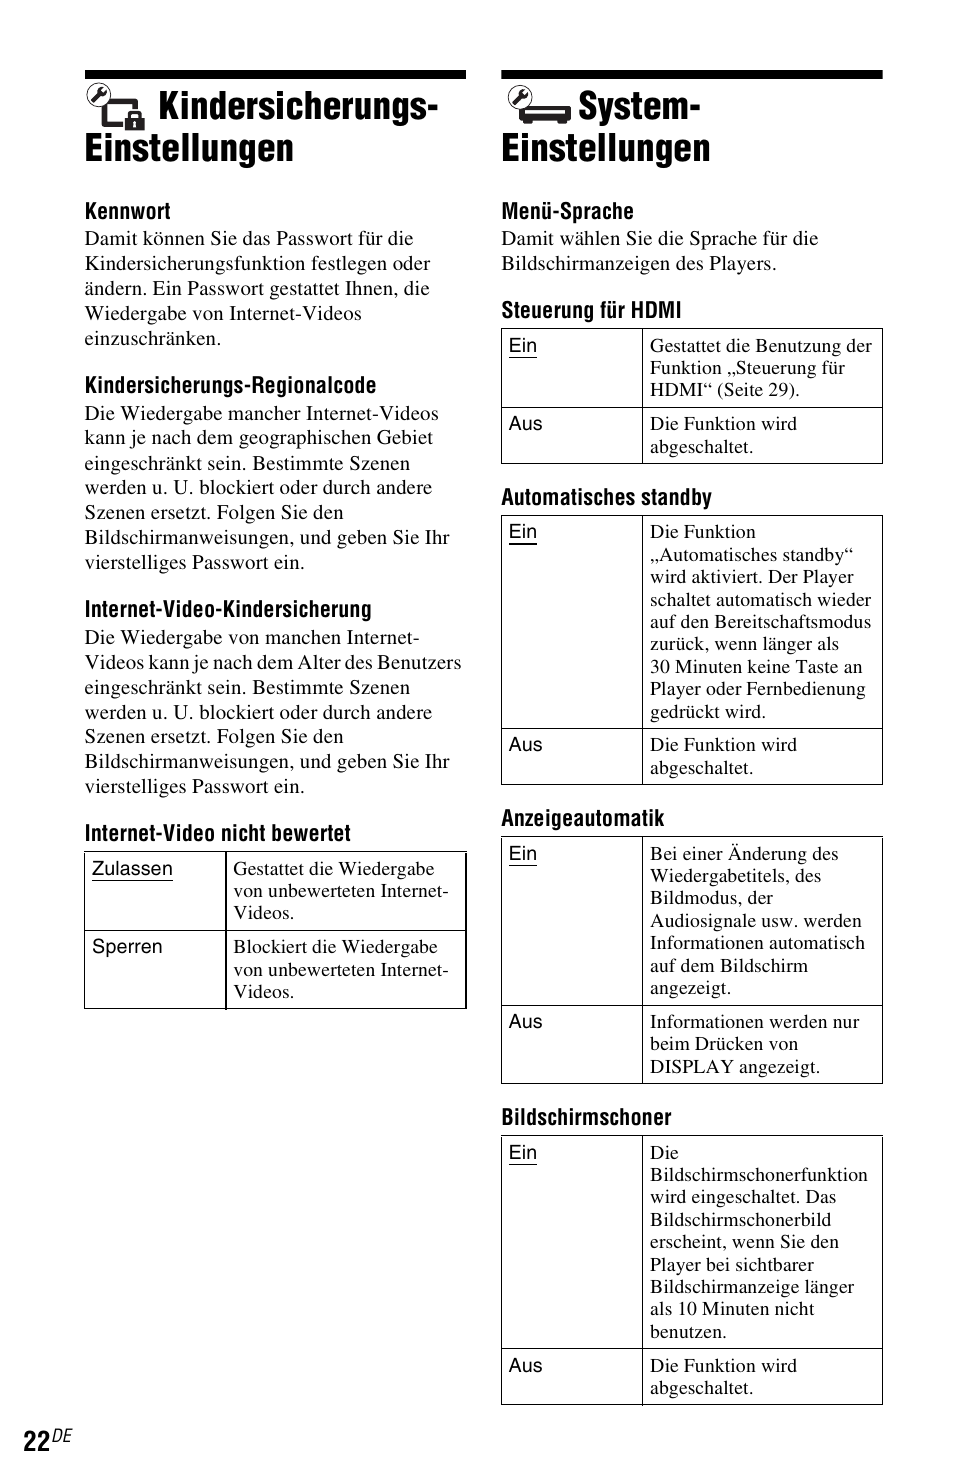 Kindersicherungs-einstellungen, System-einstellungen, N (seite 22) | Seite 22), Kindersicherungs- einstellungen, System- einstellungen | Sony SMP-N100 Benutzerhandbuch | Seite 54 / 167